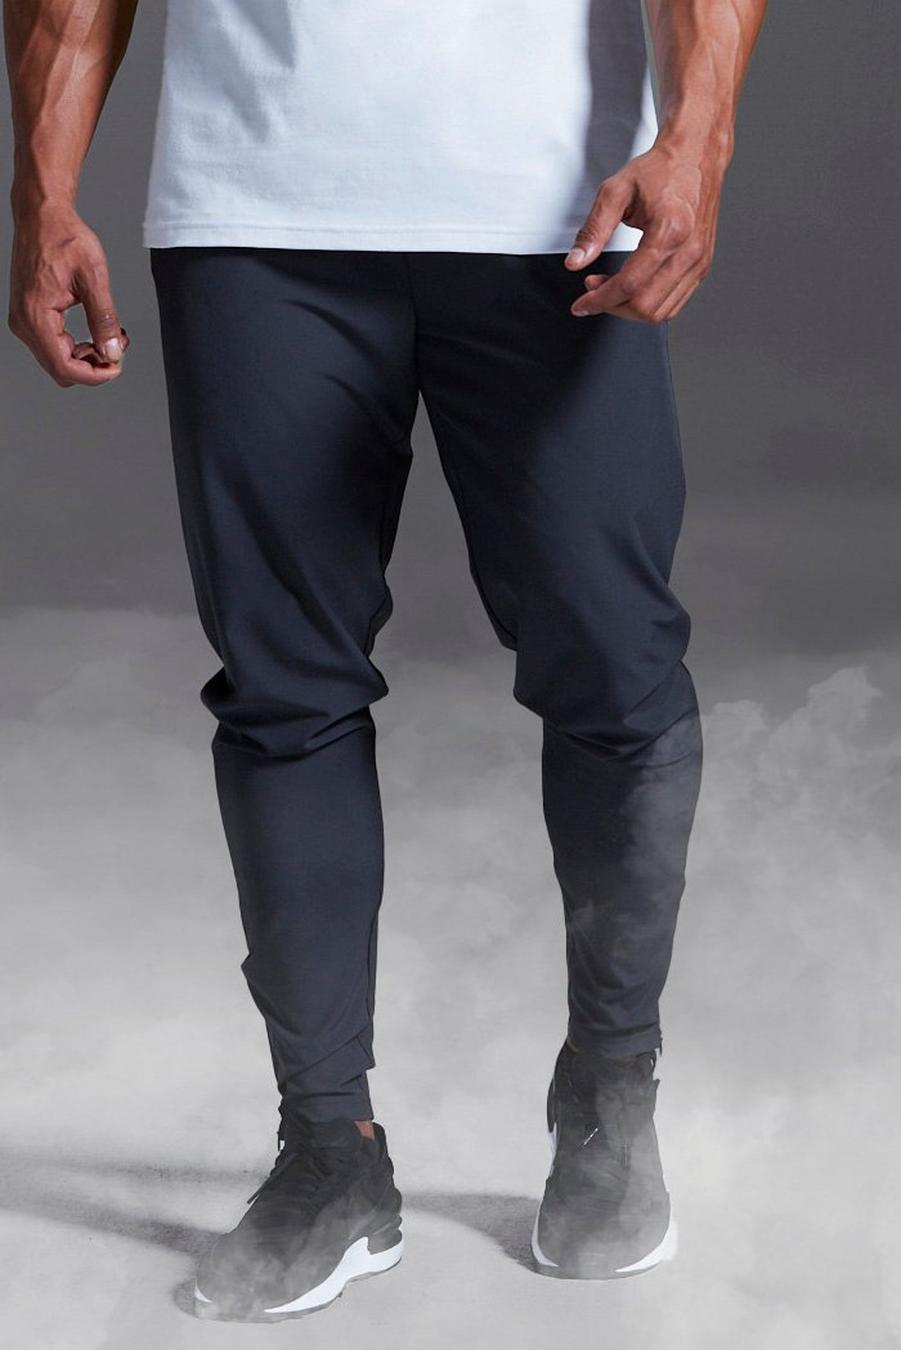 Pantaloni tuta da palestra Stretch Man Active X Andrei, Charcoal grigio